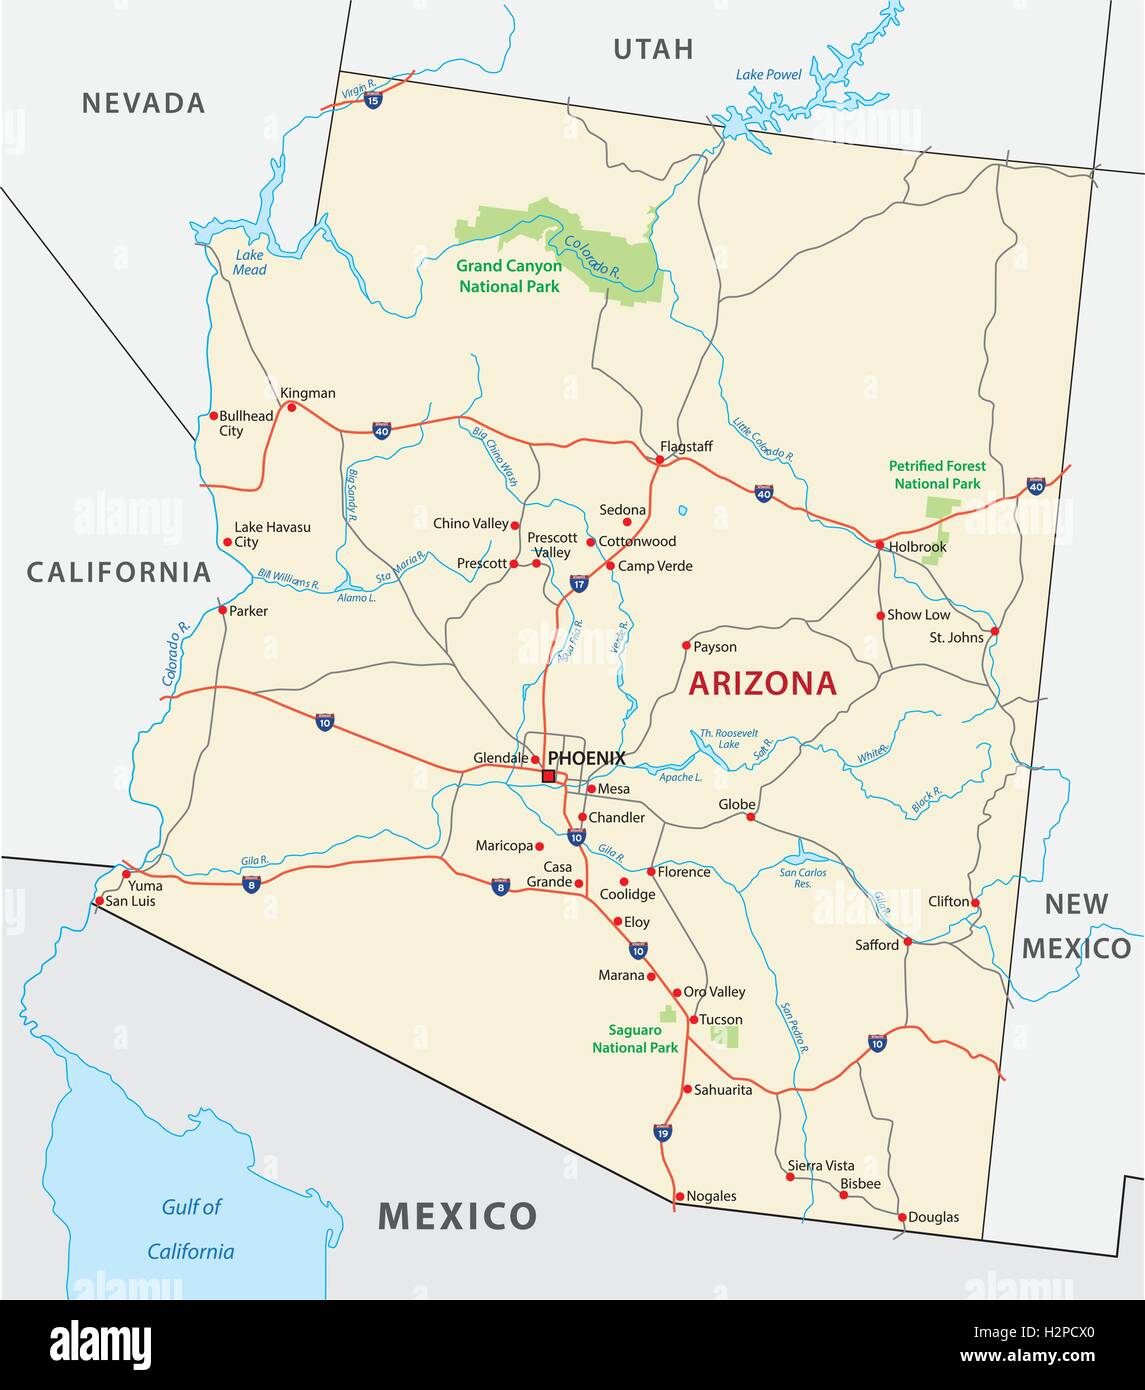 Arizona New Mexico Map Road Map